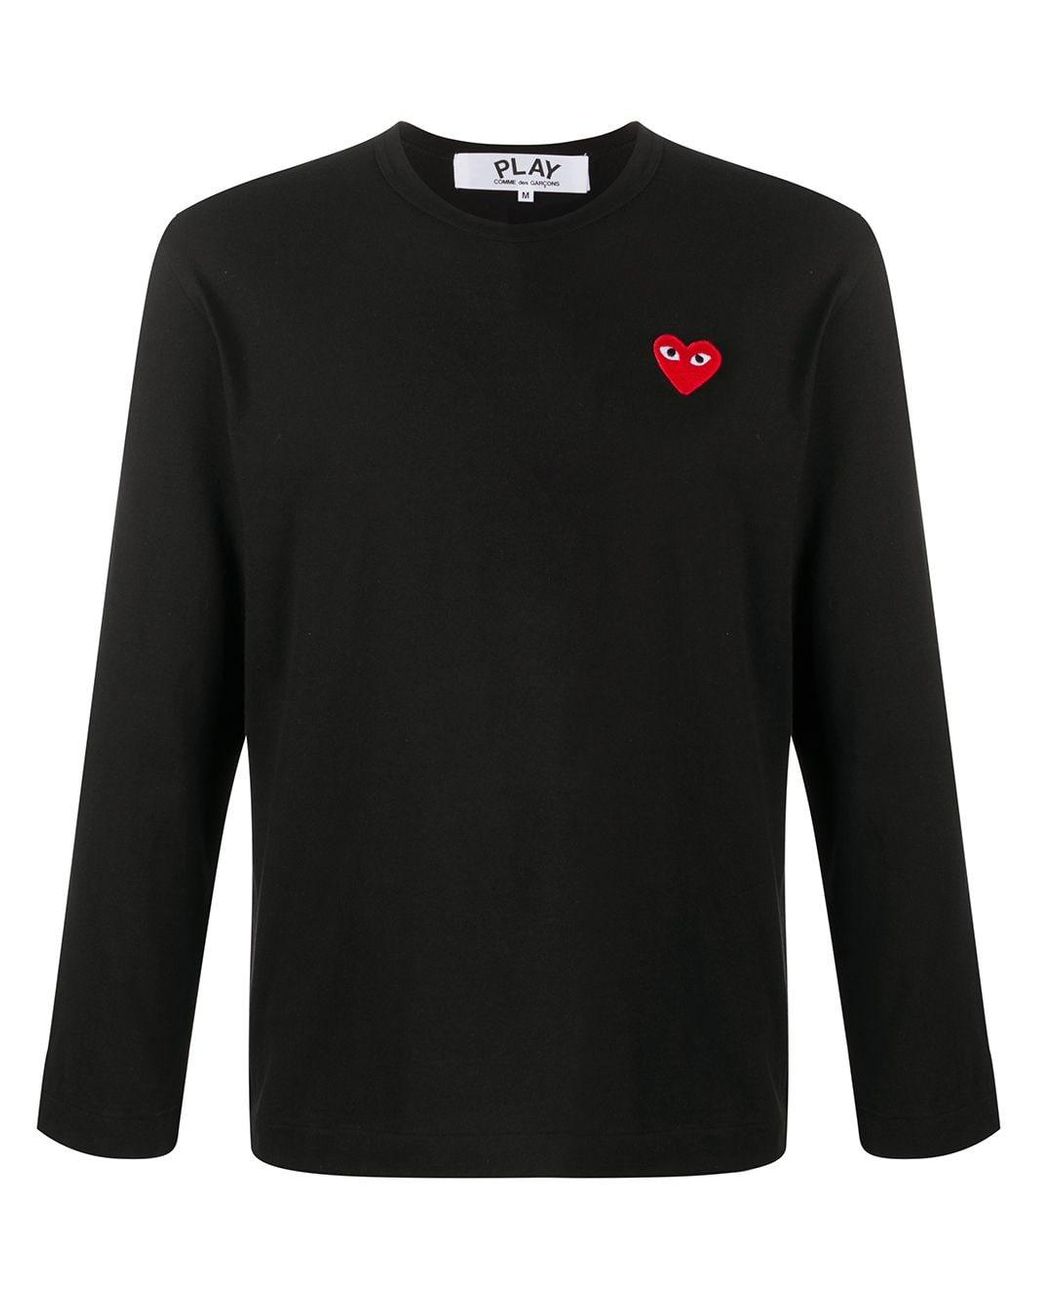 COMME DES GARÇONS PLAY Cotton Crewneck Sweater in Black for Men - Lyst